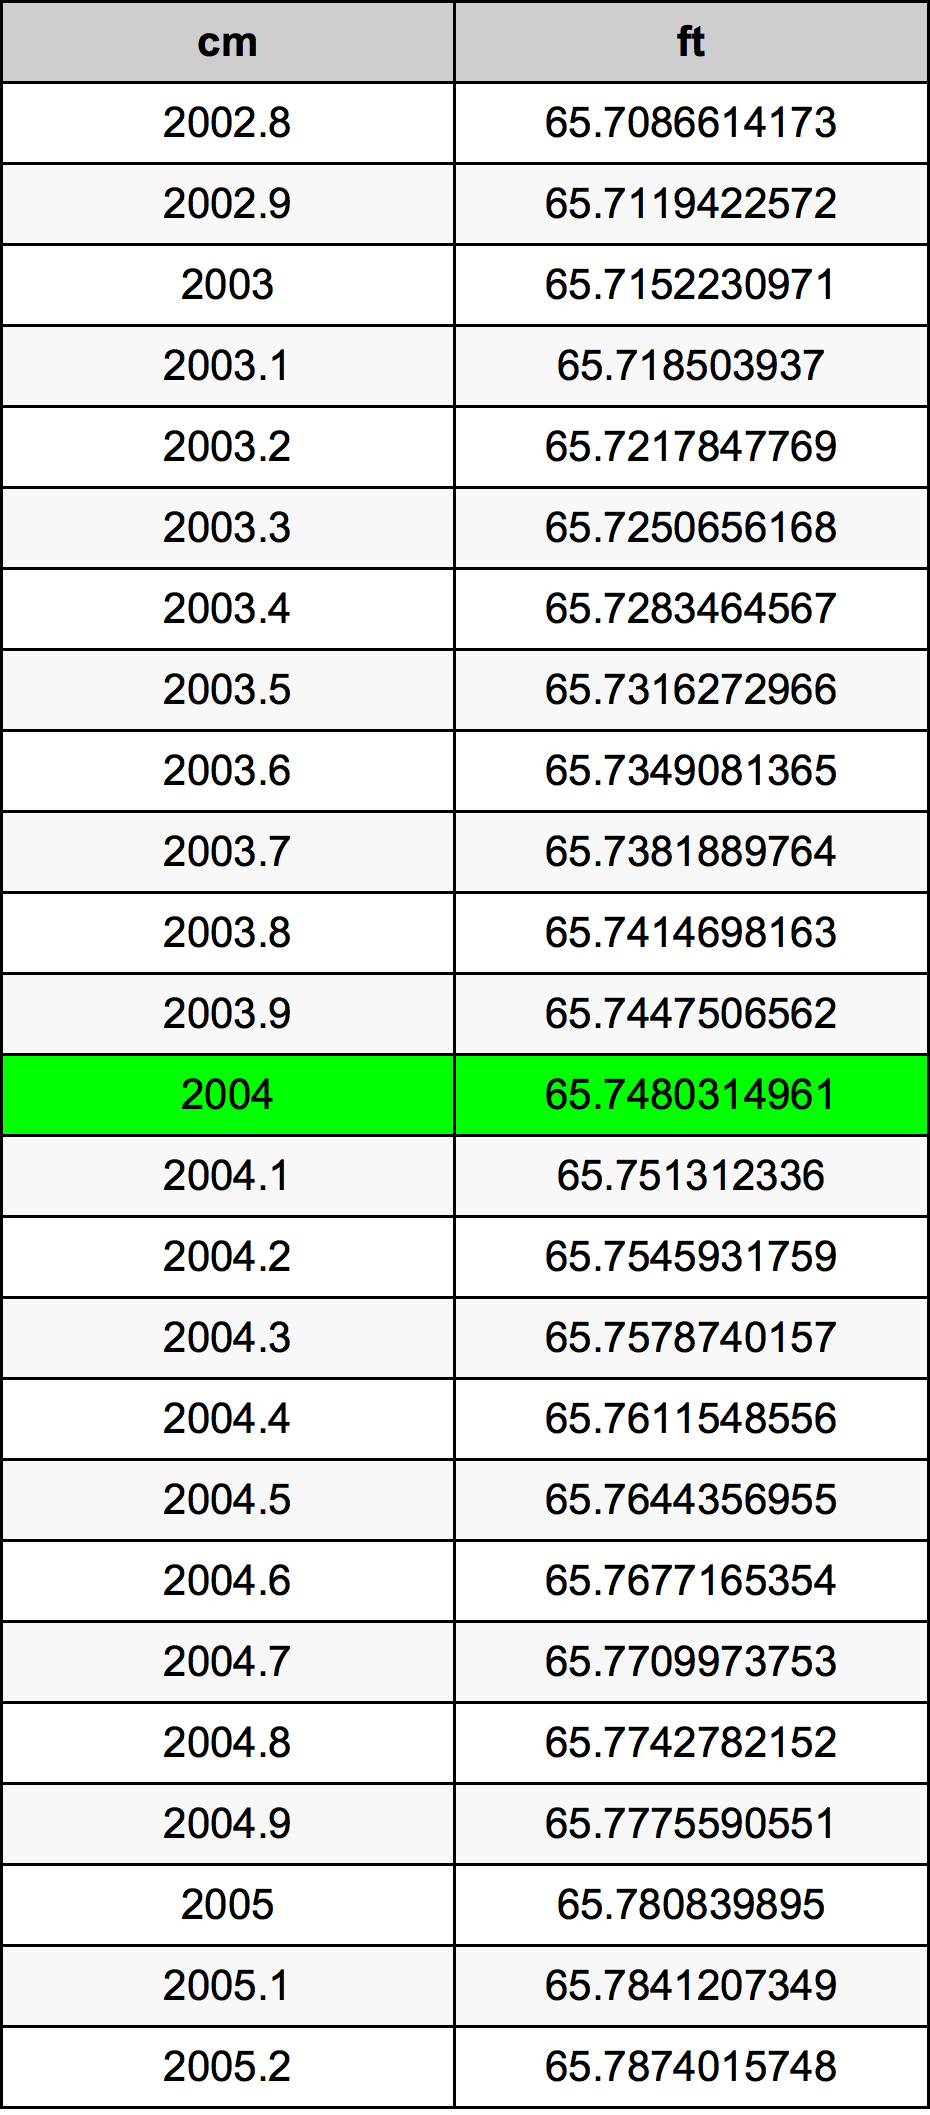 2004 Centimetro tabella di conversione